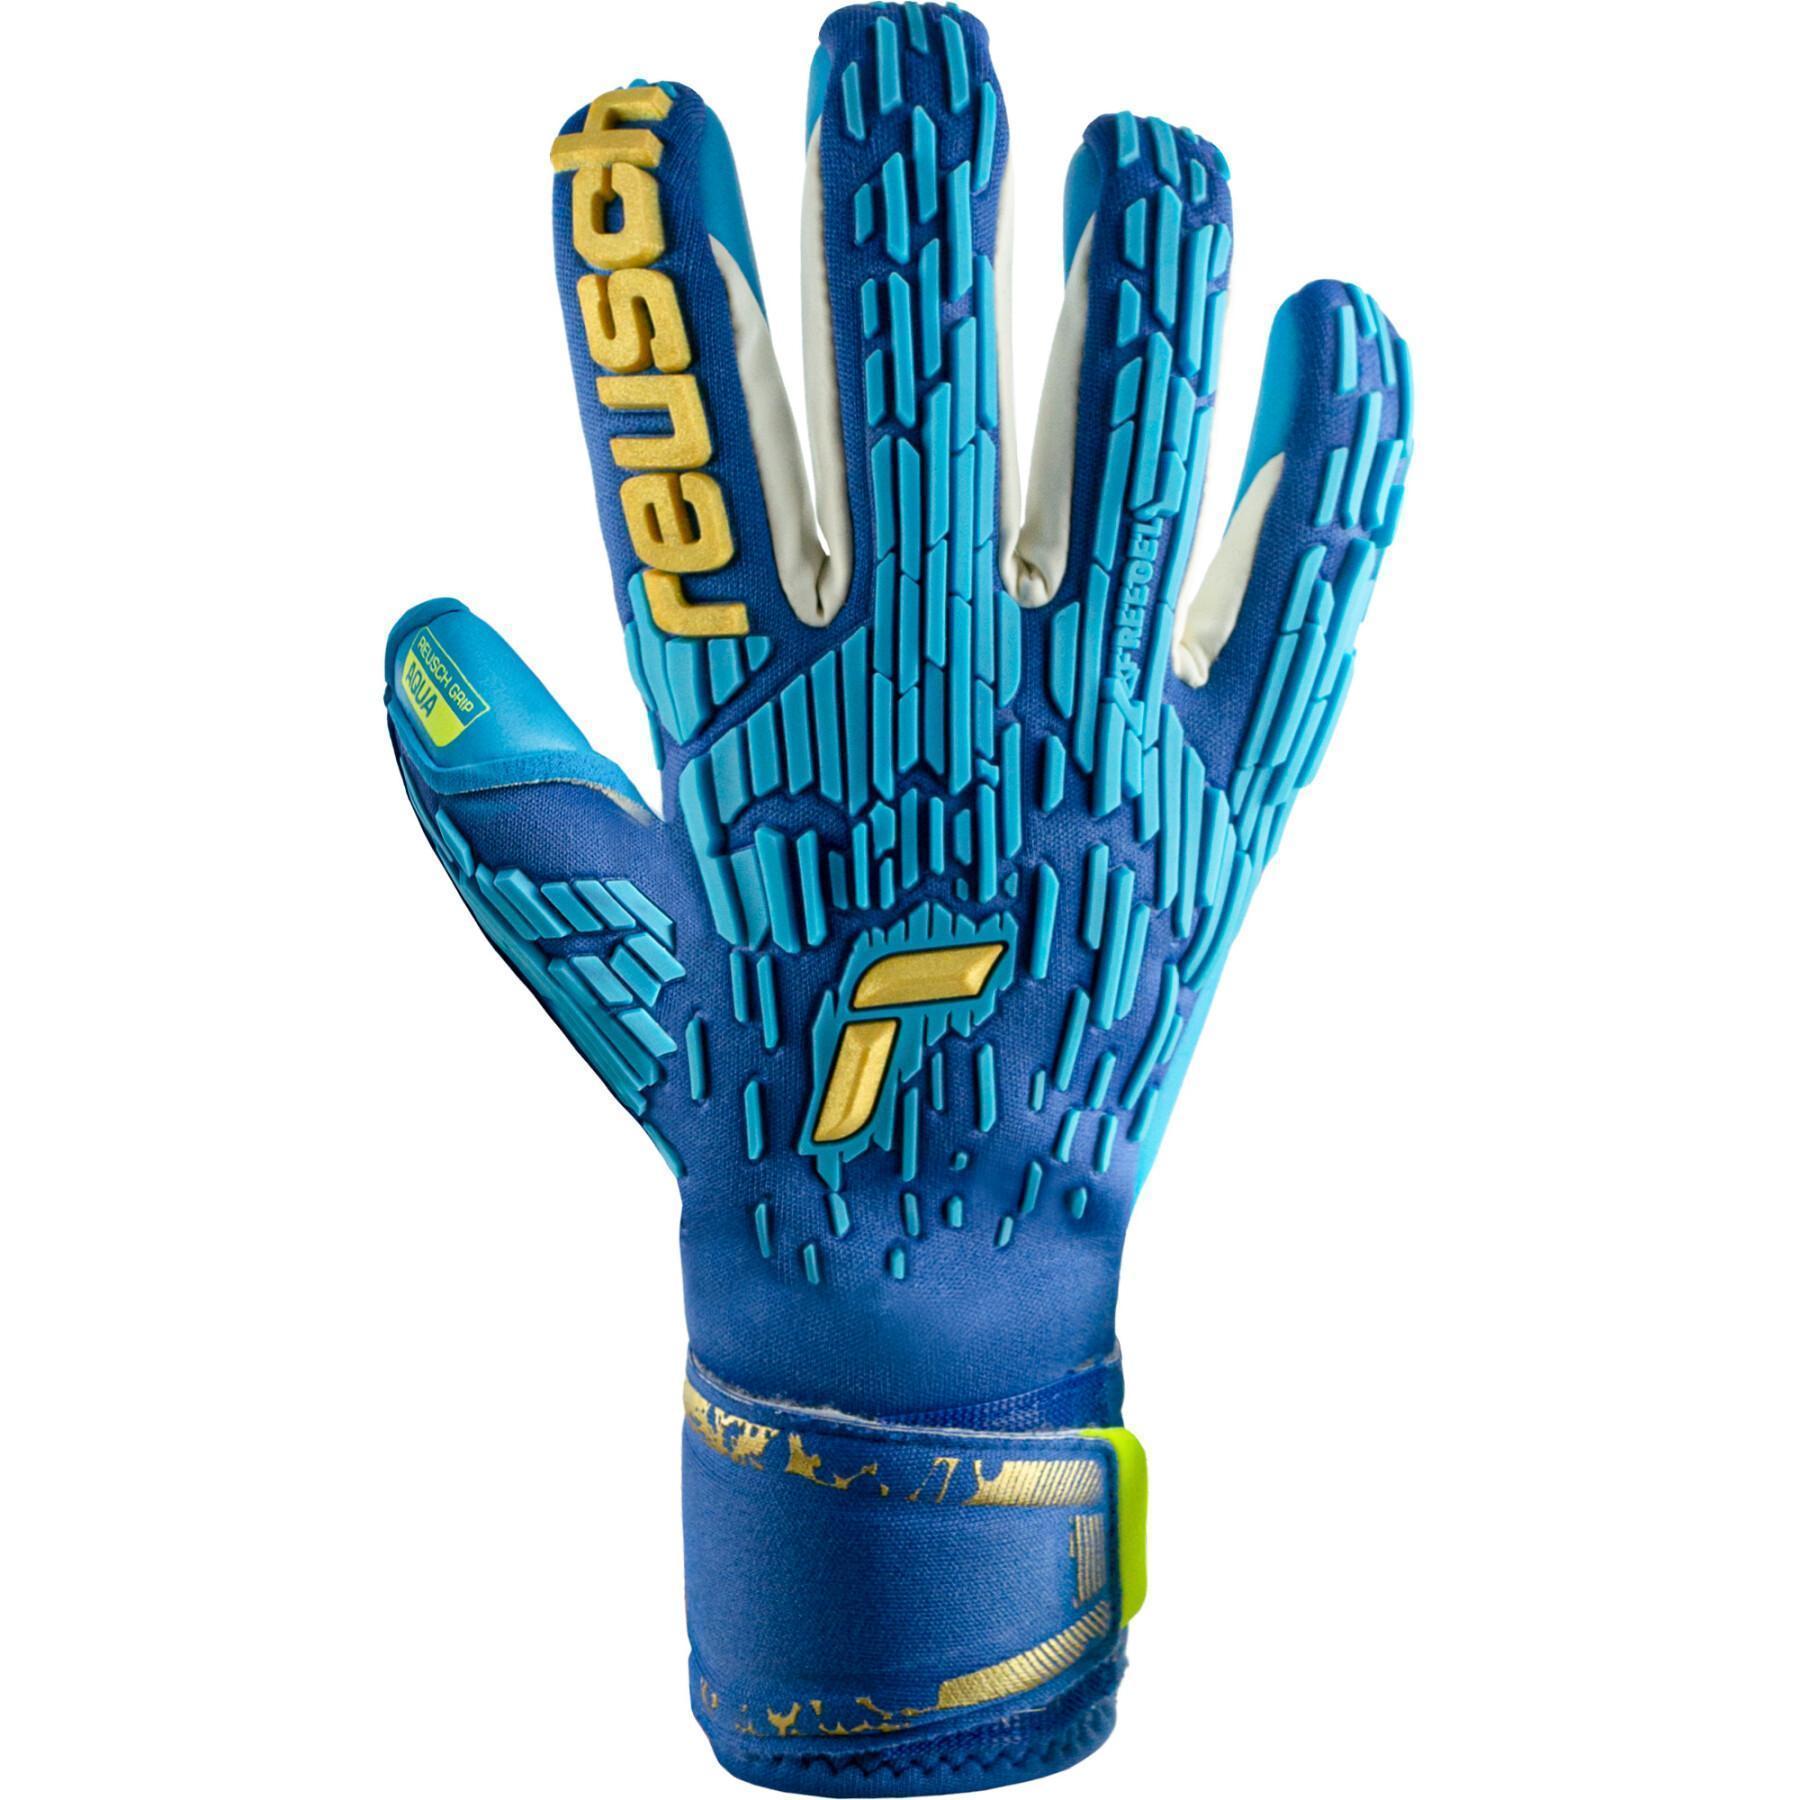 Goalkeeper gloves Reusch Attrakt Freegel Aqua Windproof